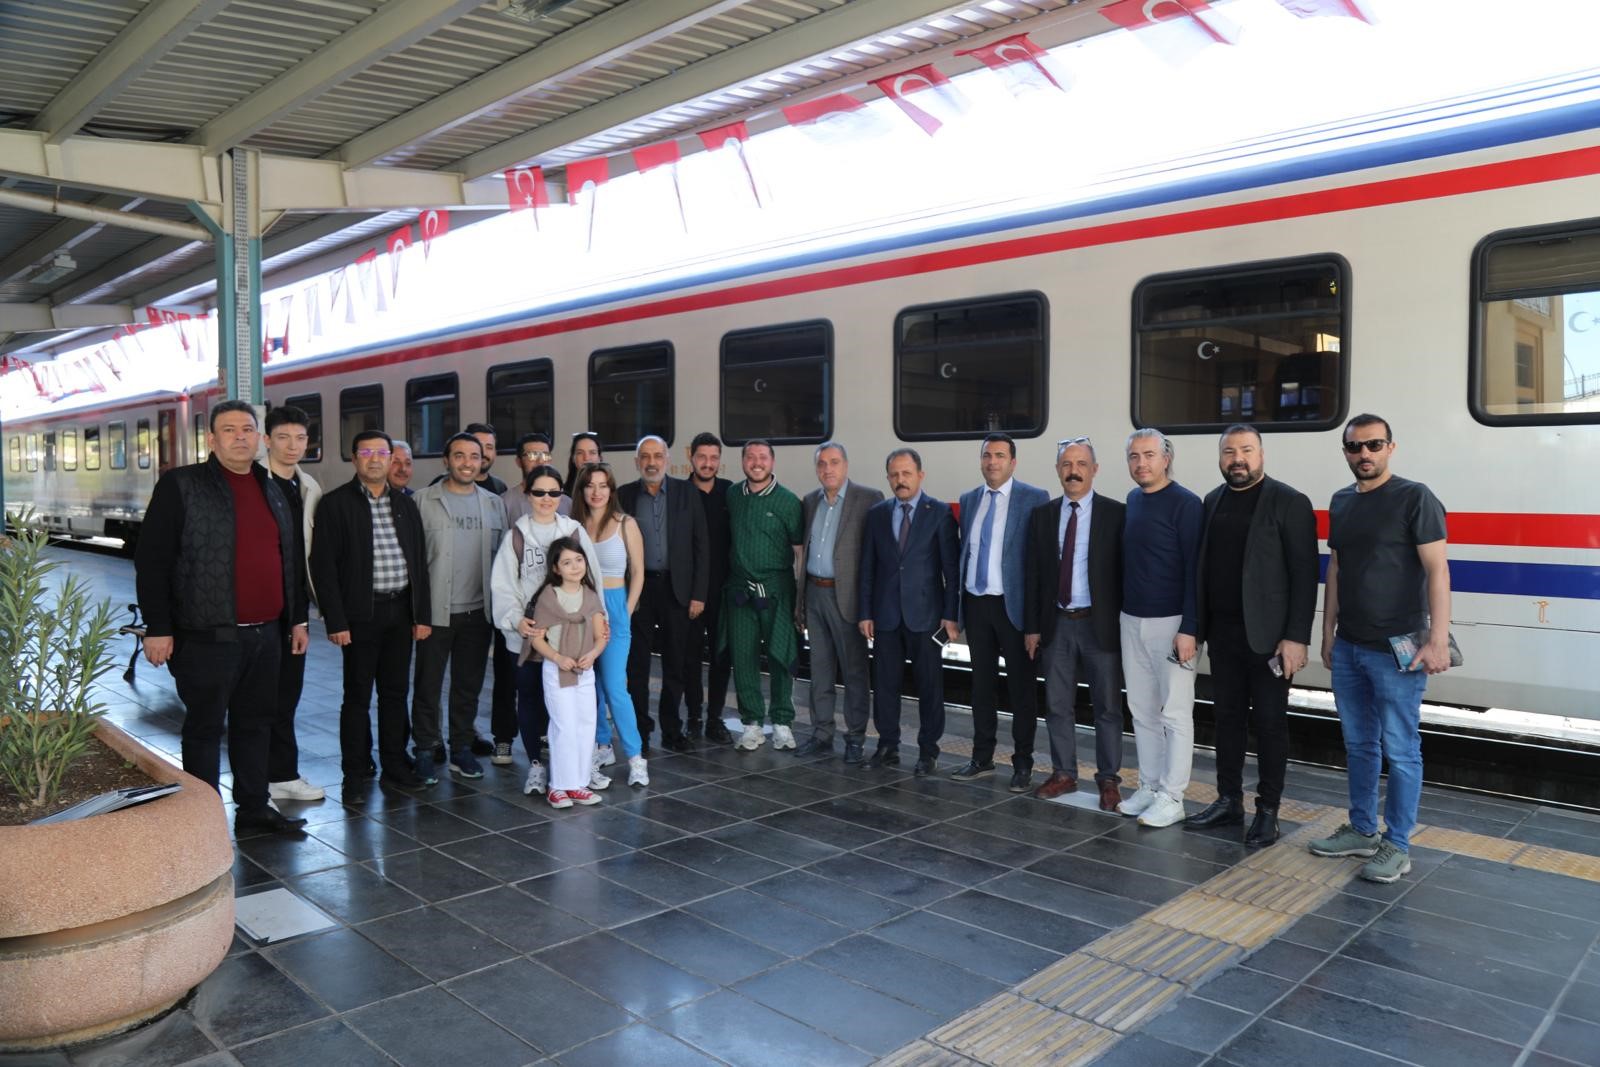 Ankara-Diyarbakır turistik tren seferleri başlıyor: Fiyatlar ne kadar?